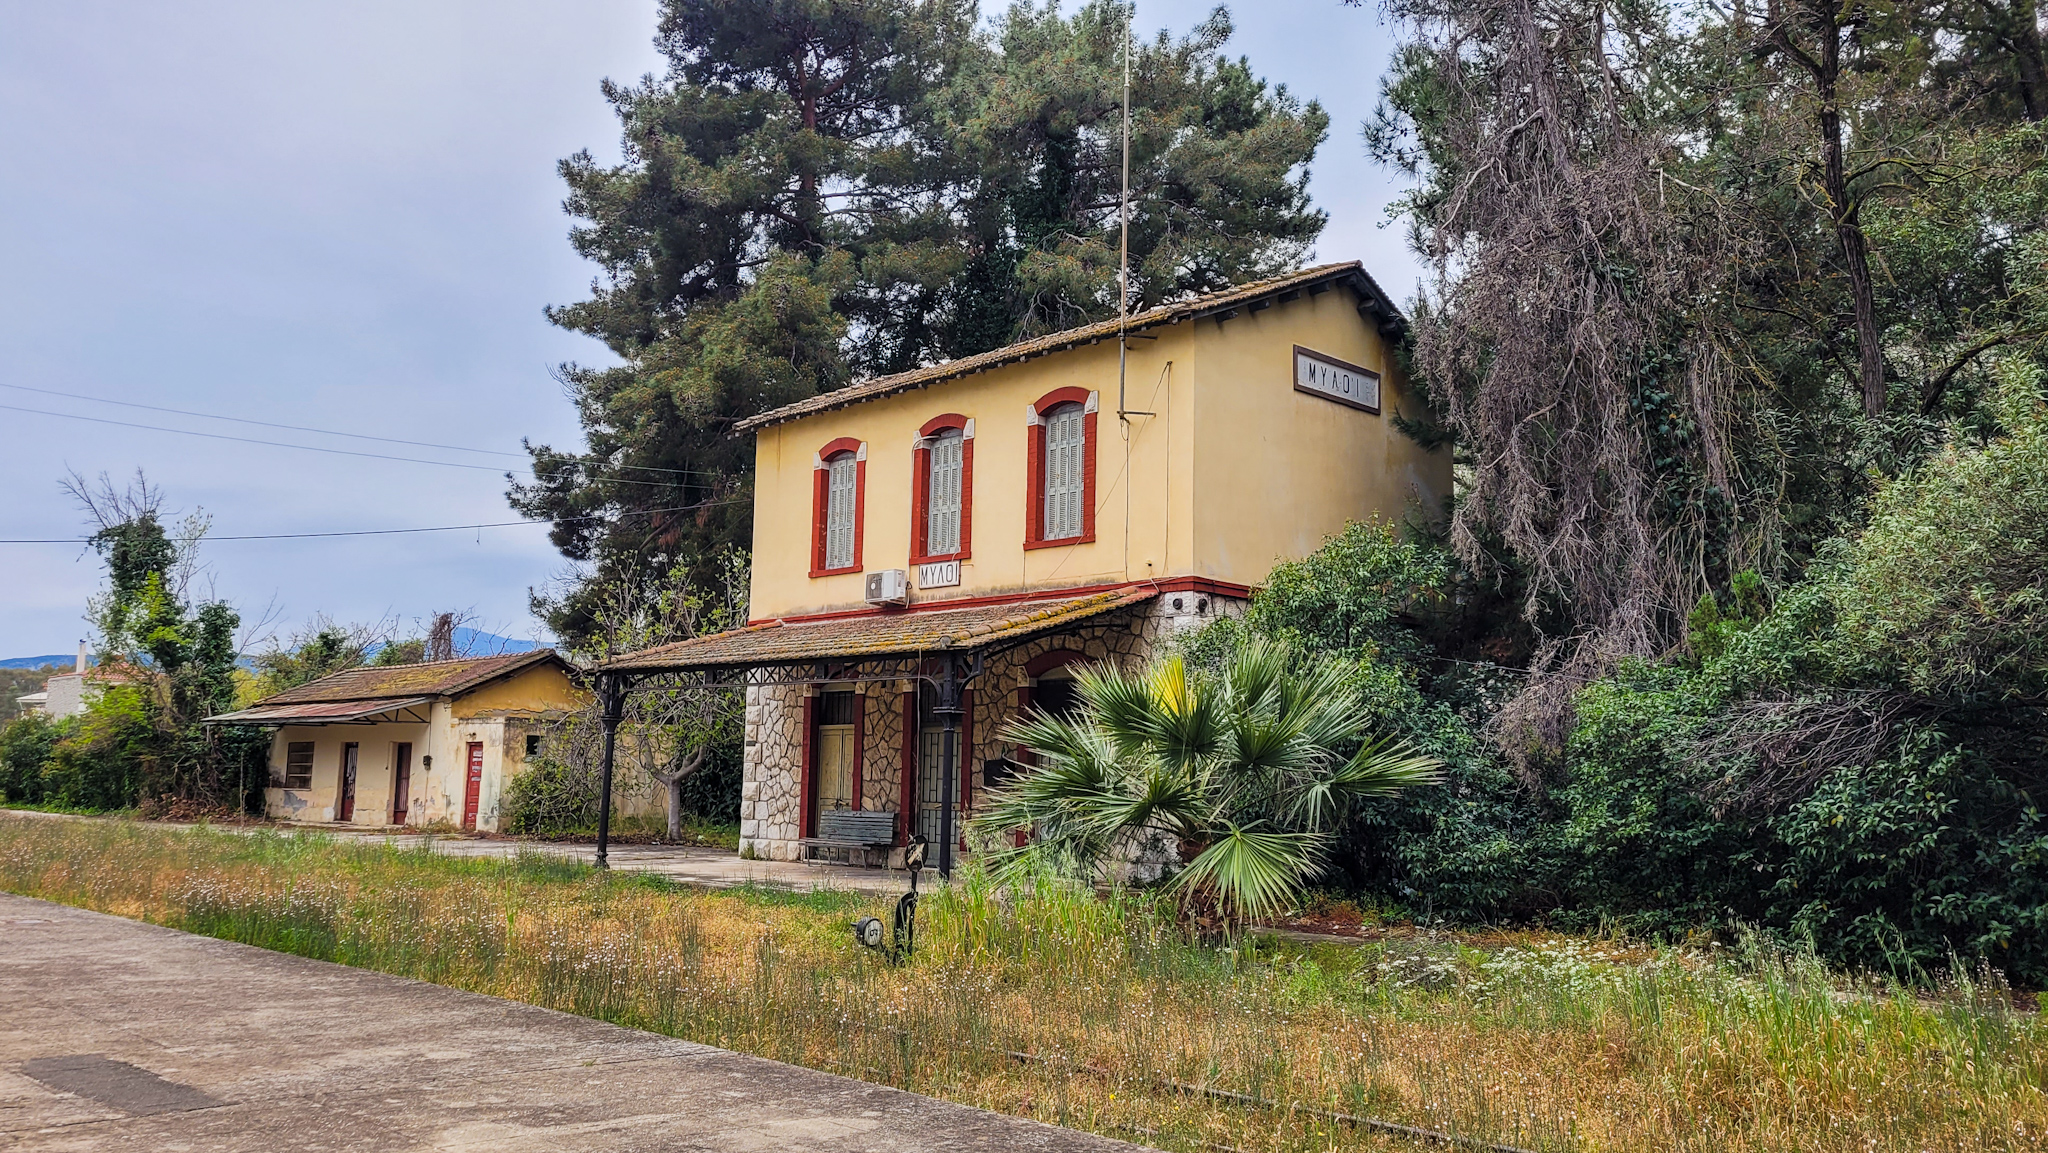 Gare ferroviaire abandonnée de Mili